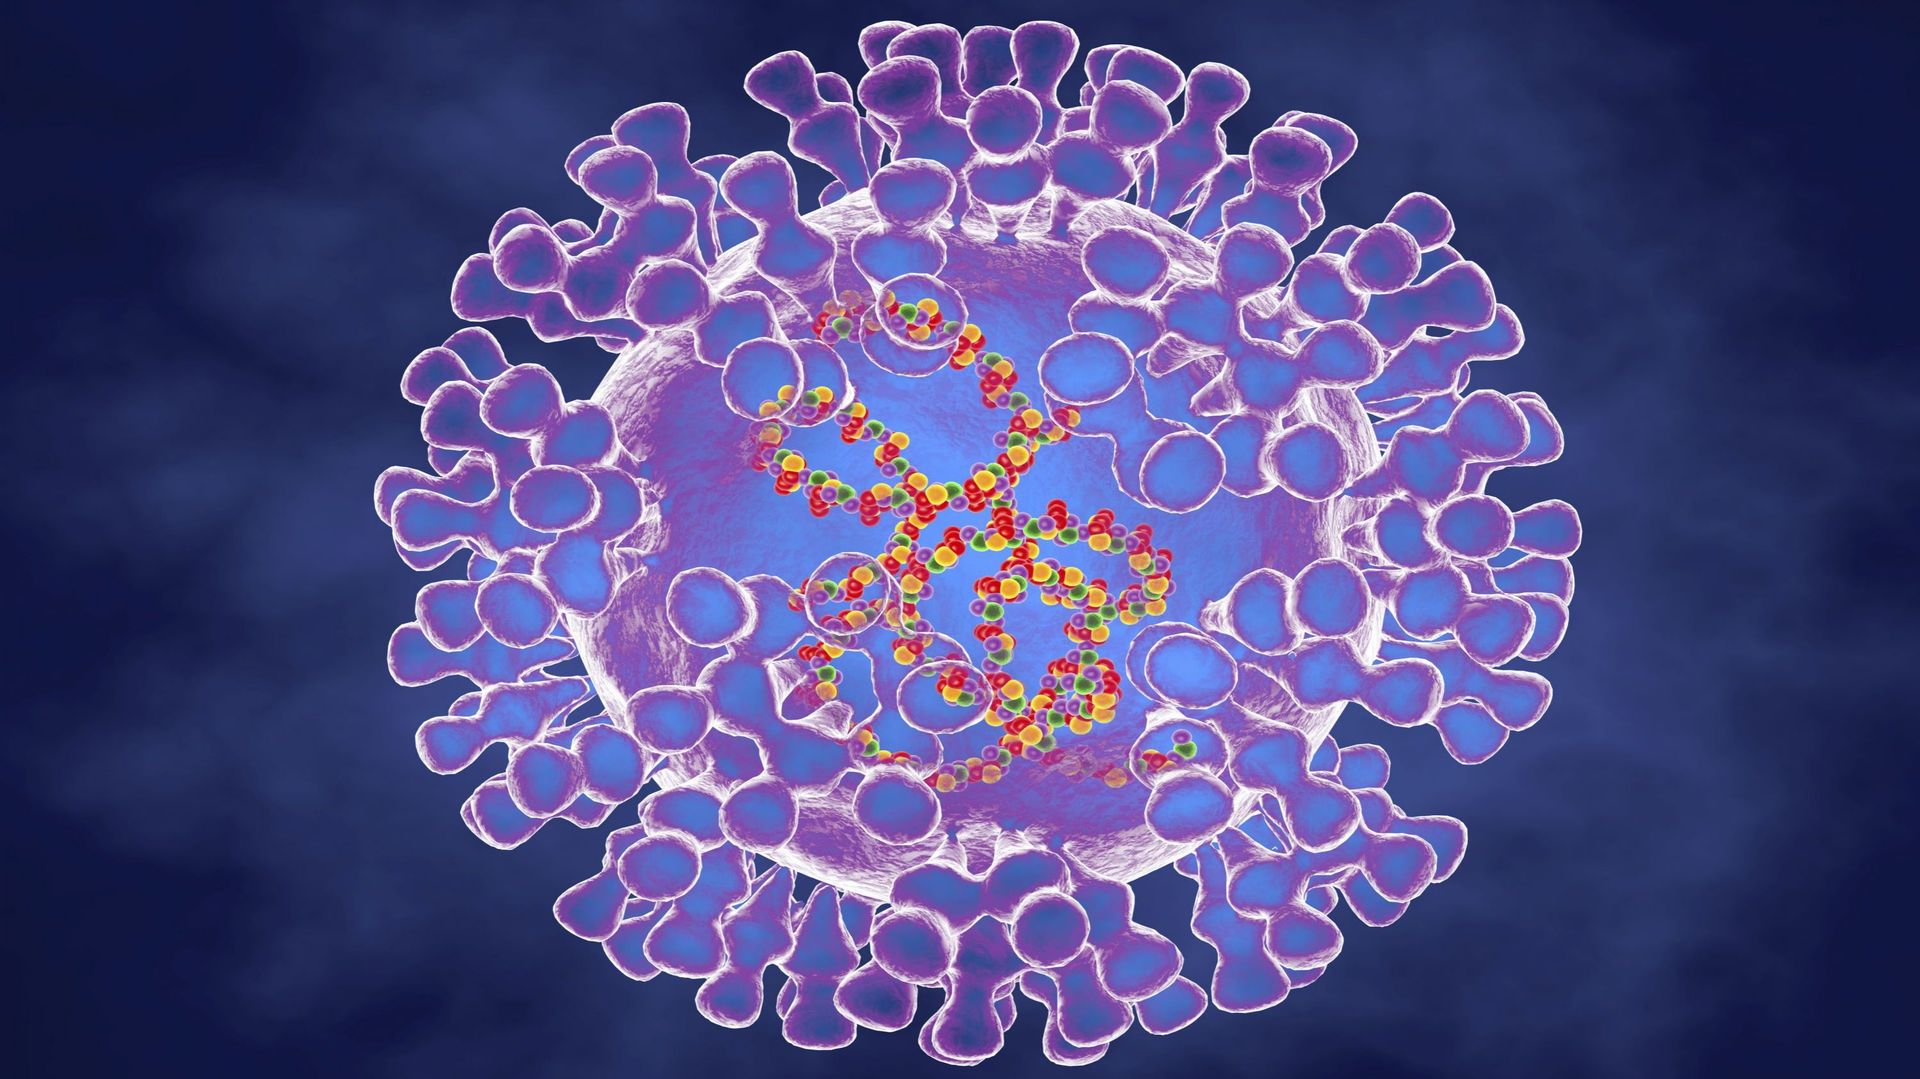 Pox virus, illustration